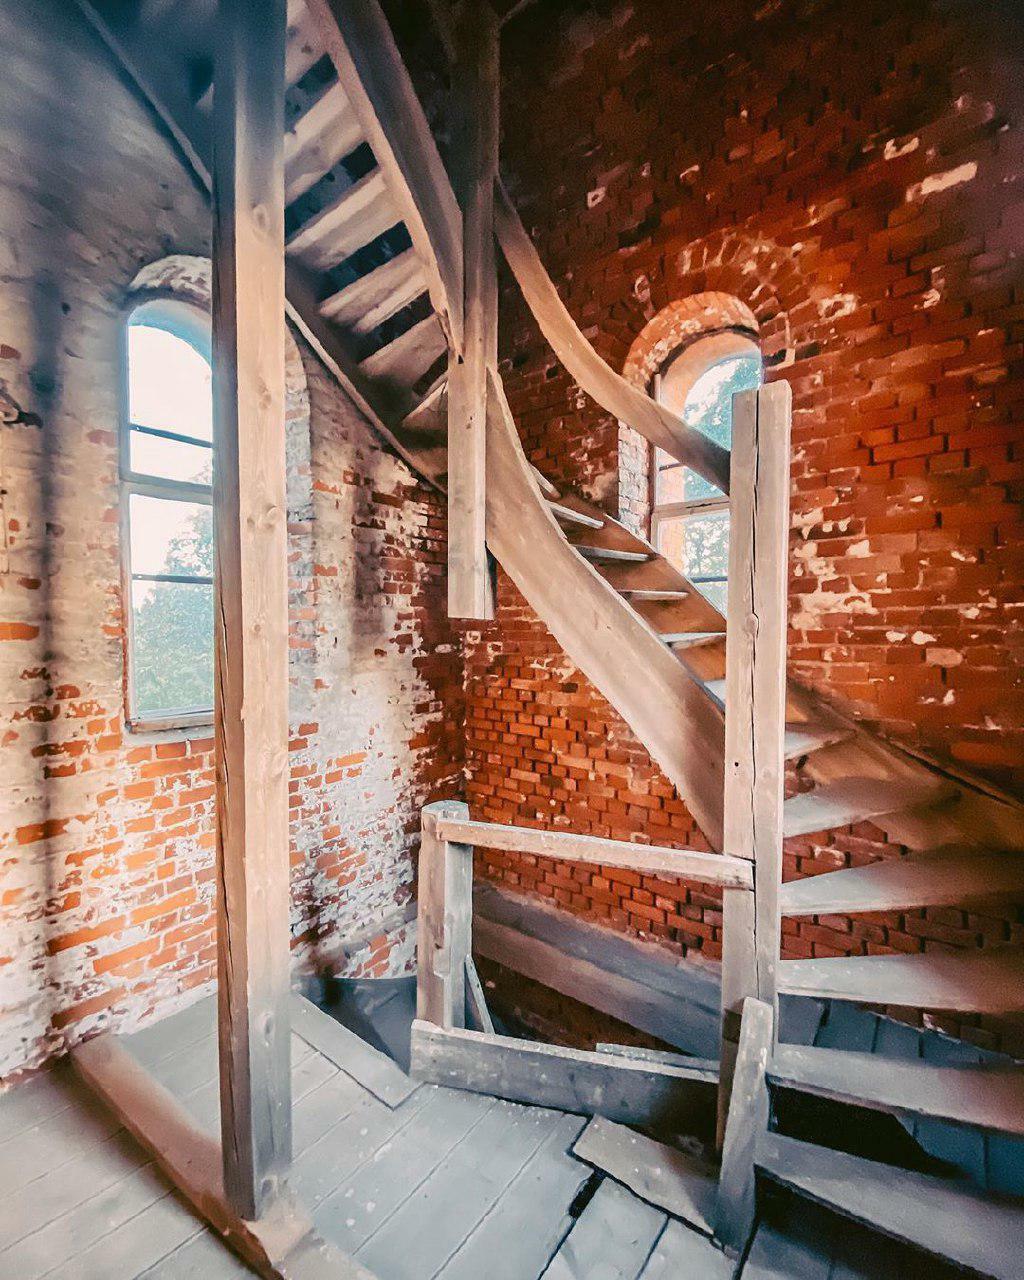 Кирха Пелленингкена, лестница внутри башни